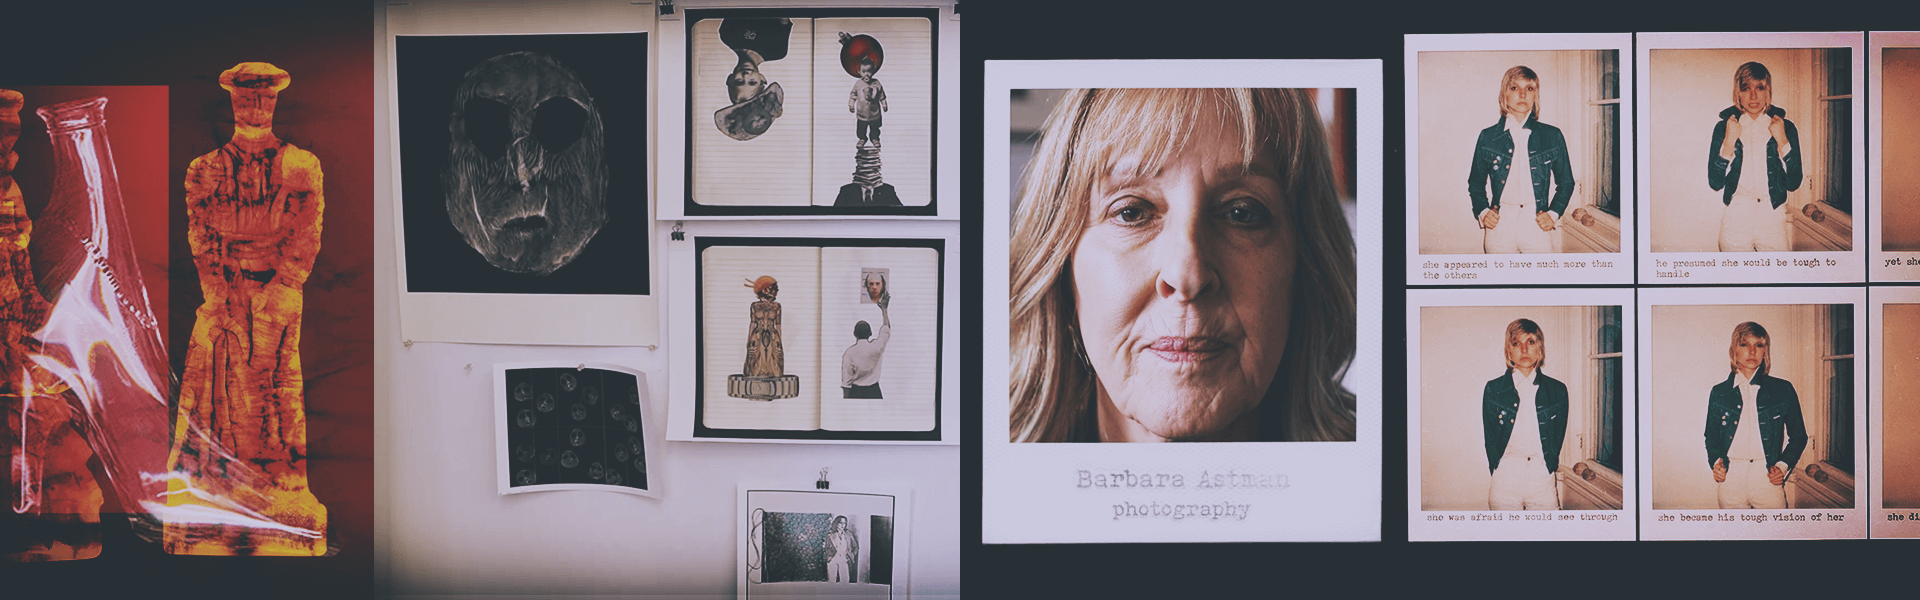 Un triptyque composé de différentes œuvres d’art à gauche et au centre, et de portraits de Barbara Astman à droite.